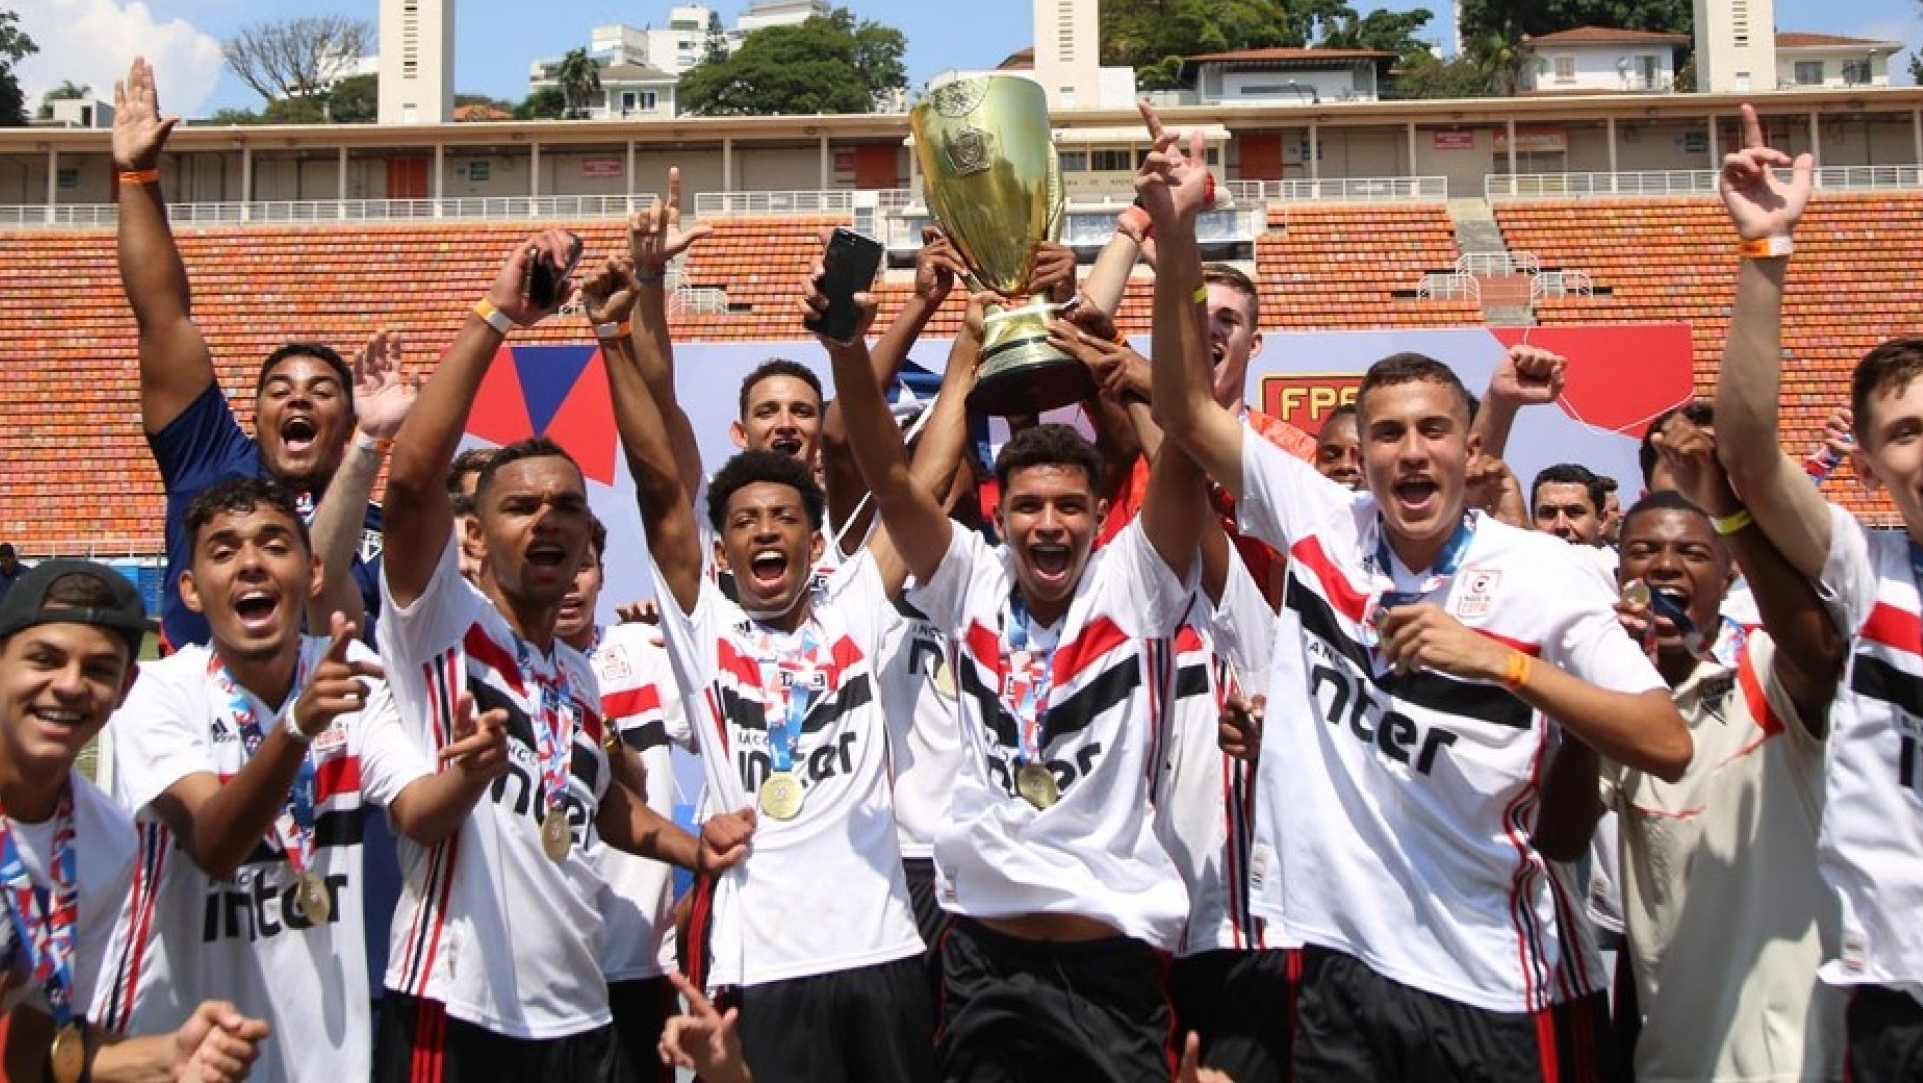 São Paulo parabeniza dupla de Cotia campeã mundial sub-17 - Gazeta